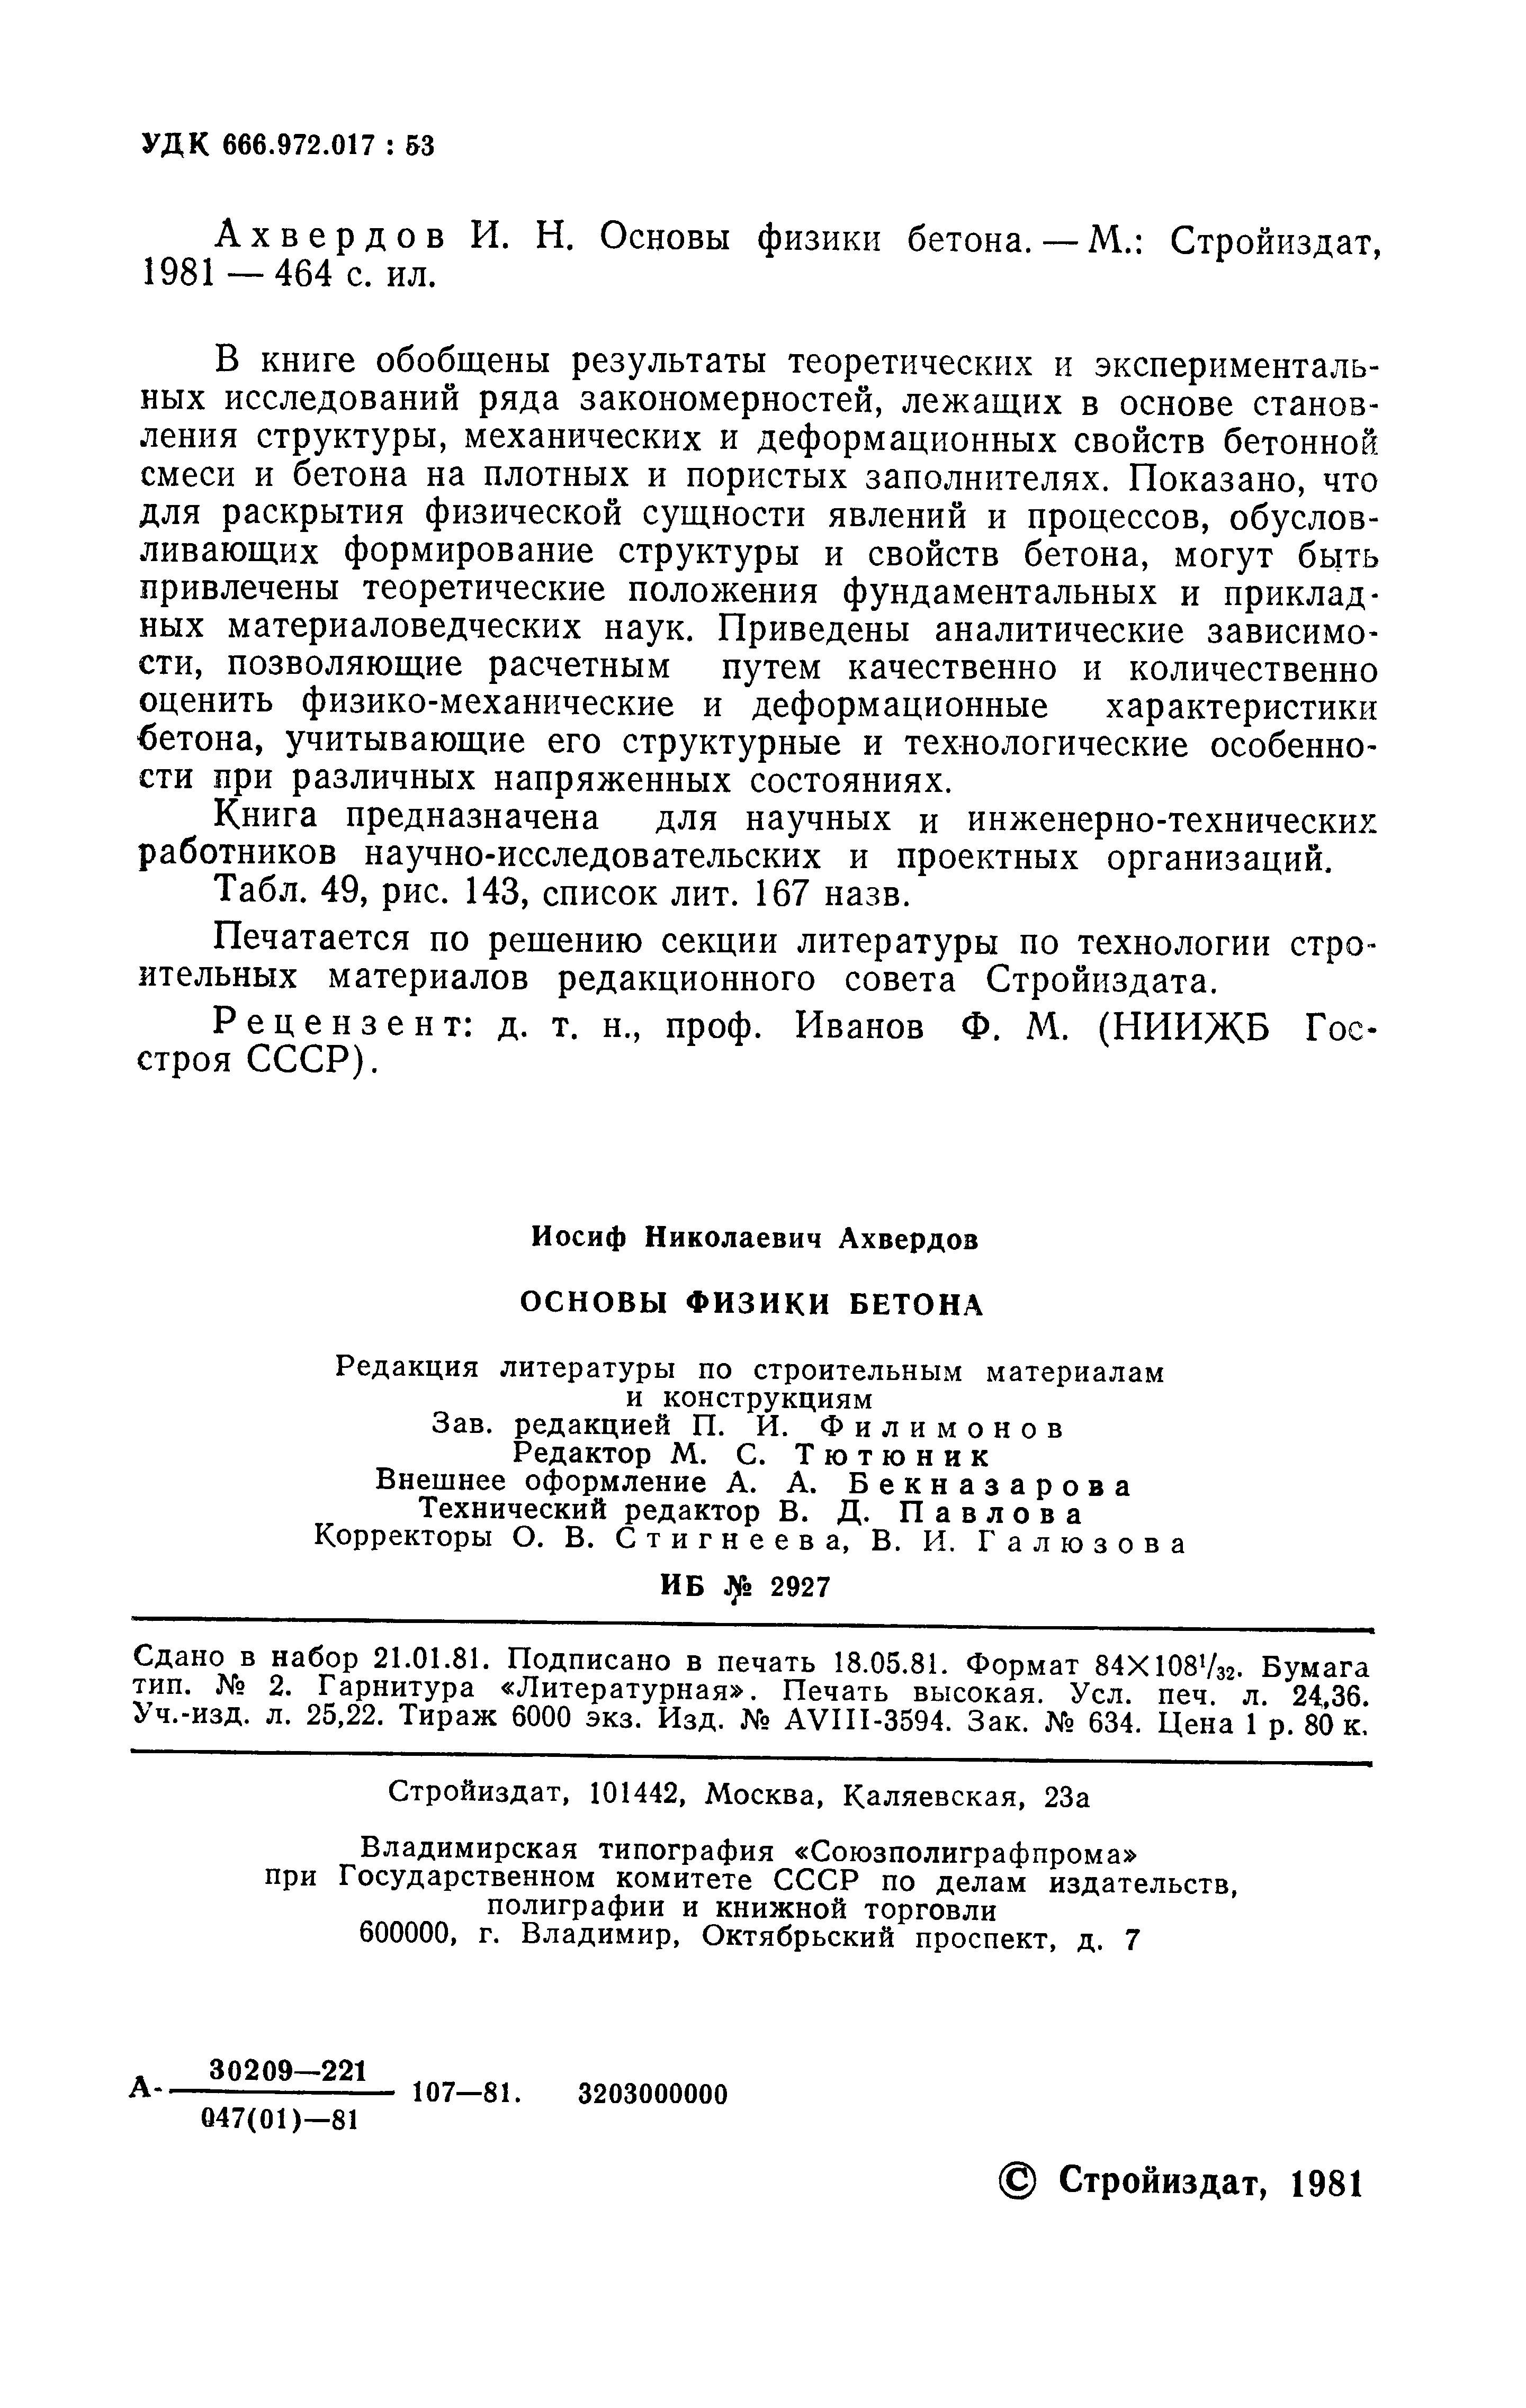 Основы физики бетона / И. Н. Ахвердов. — Москва : Стройиздат, 1981